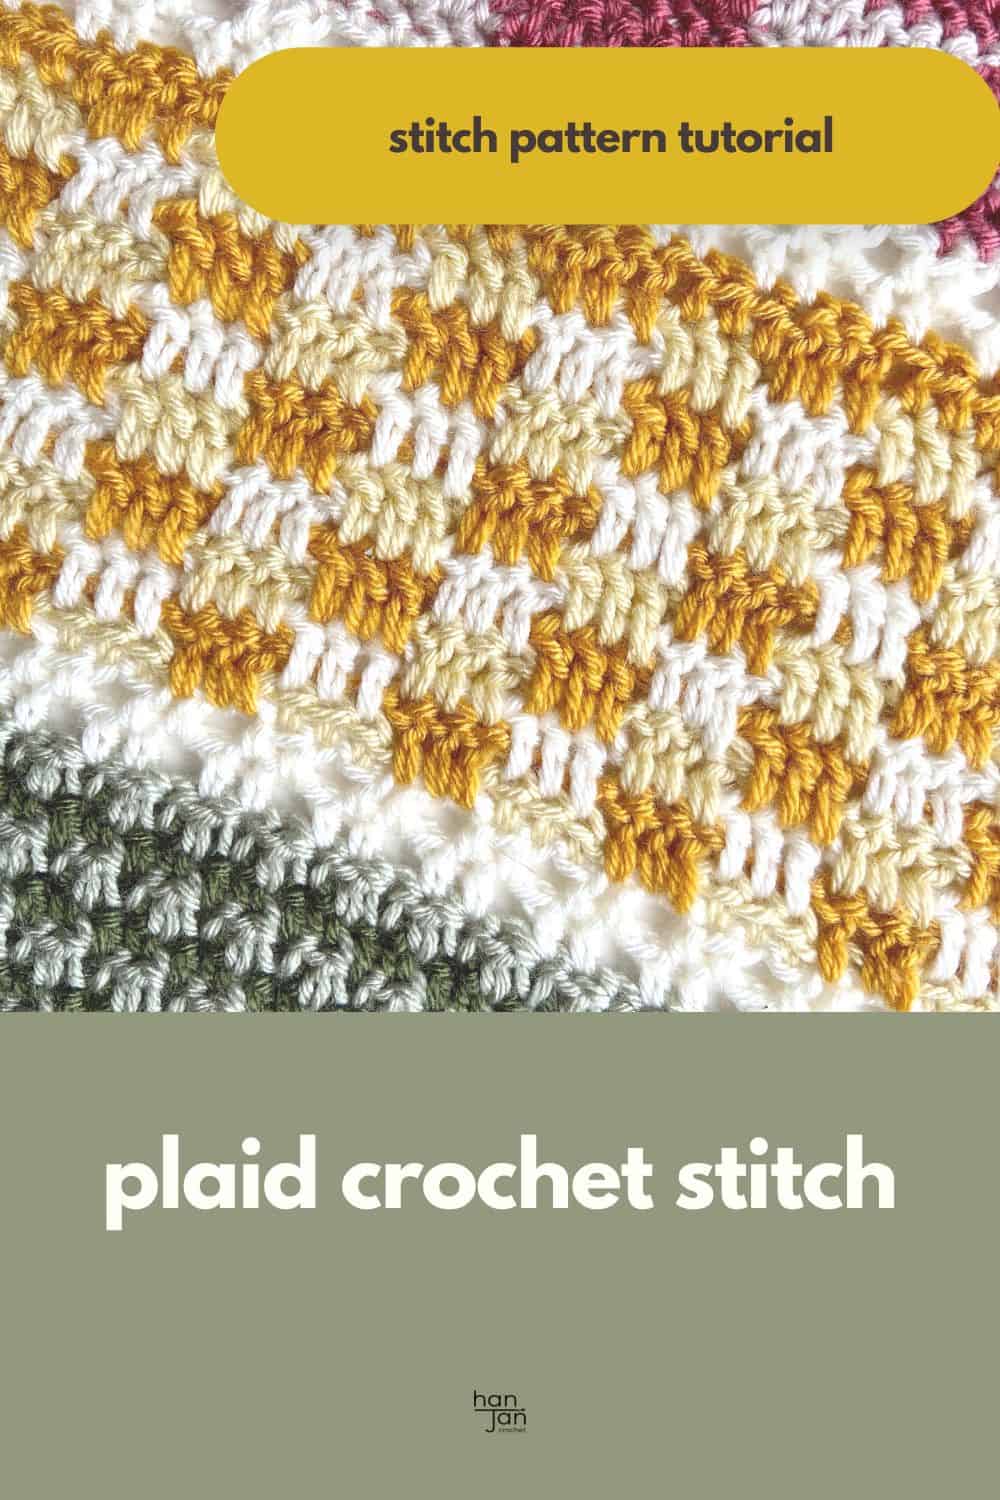 Plaid crochet stitch pattern.